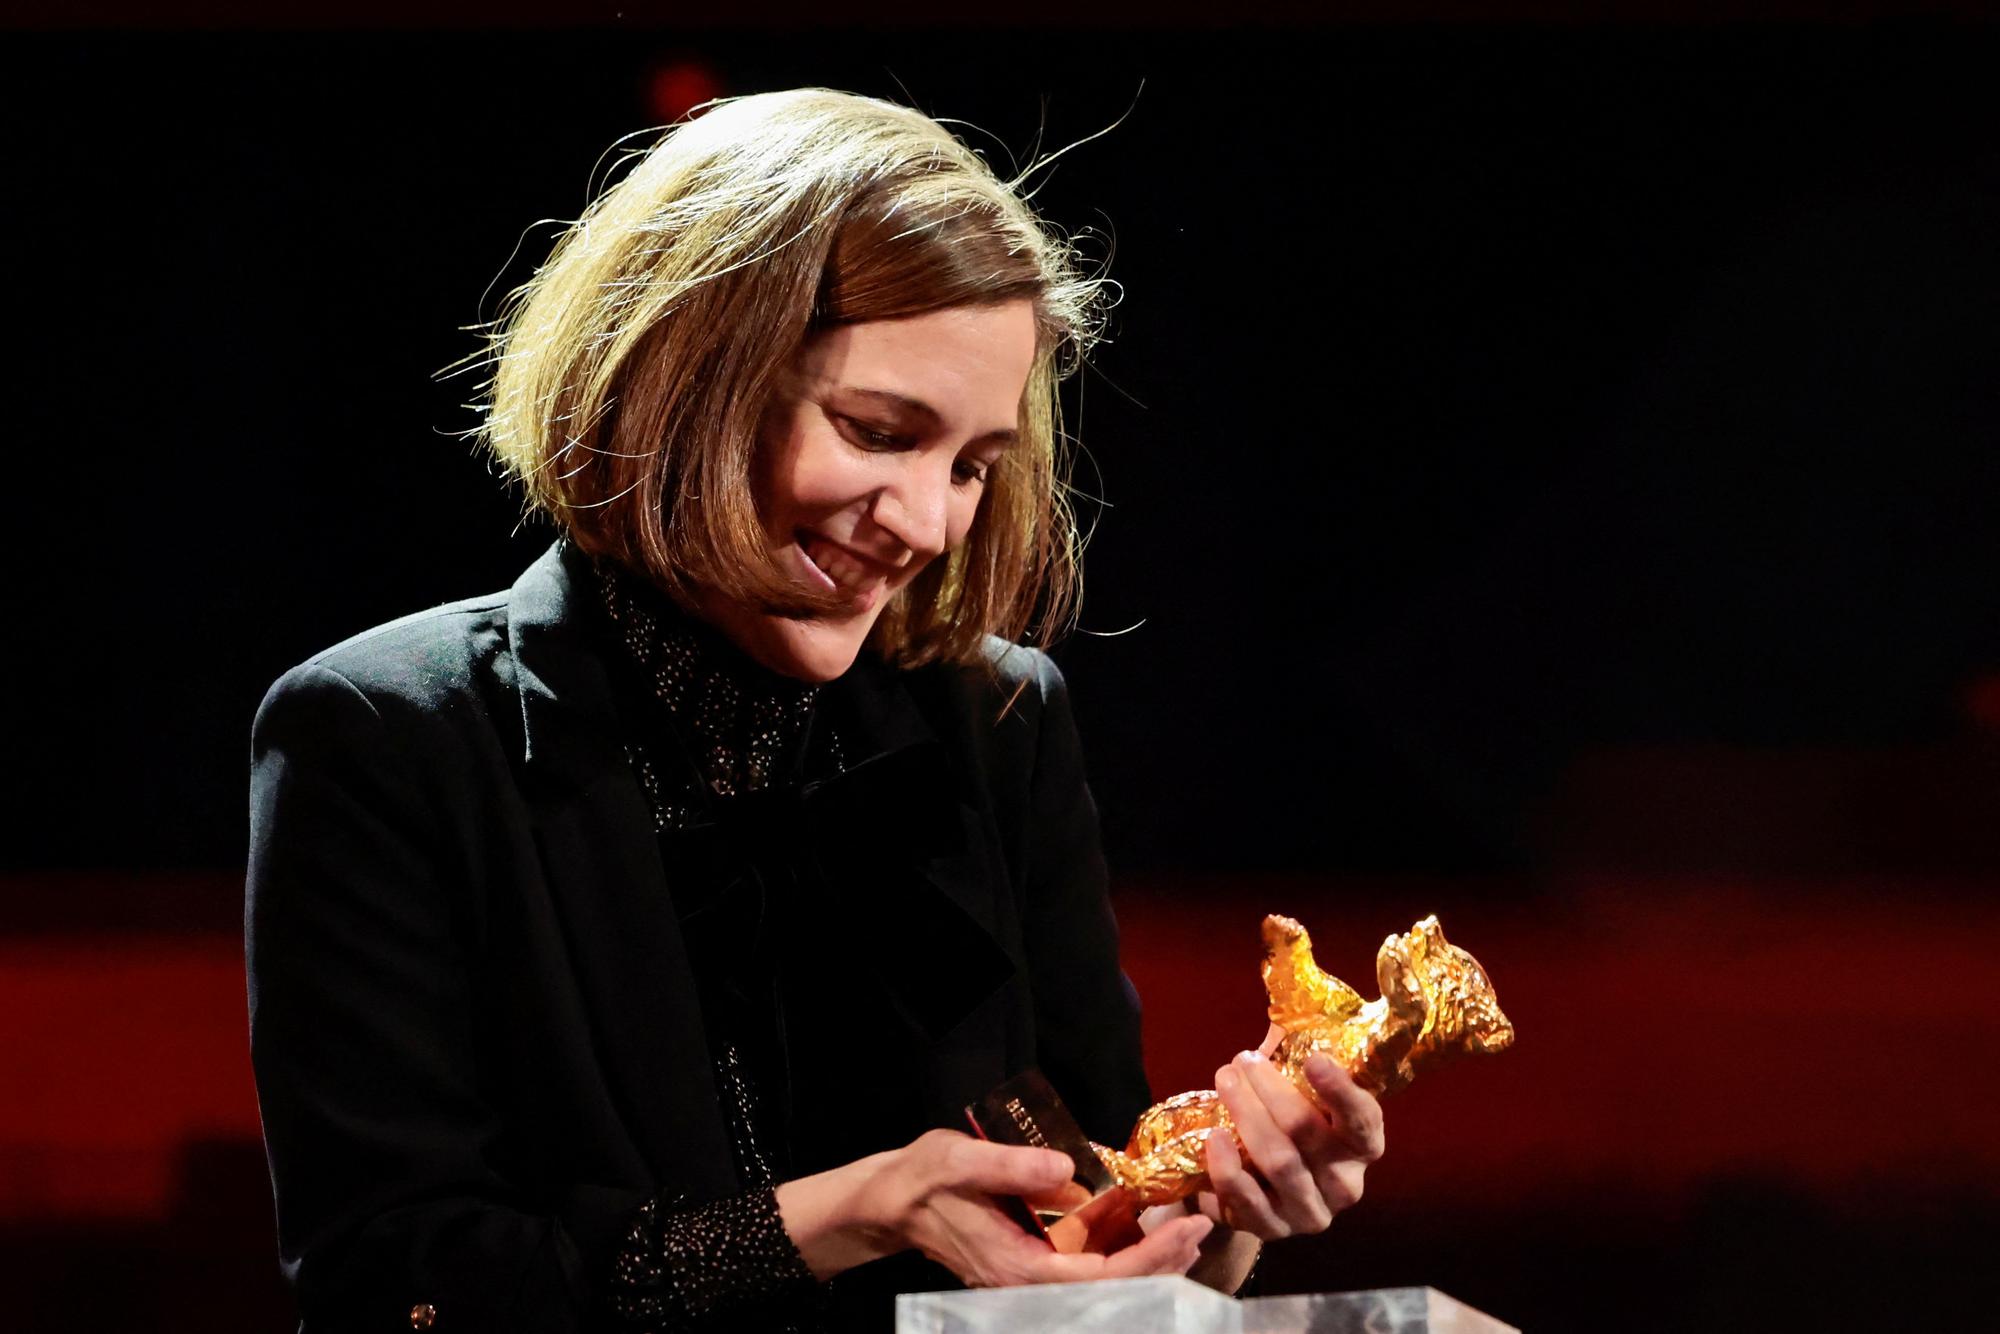 Carla Simón rep el primer Os d'Or català a la Berlinale